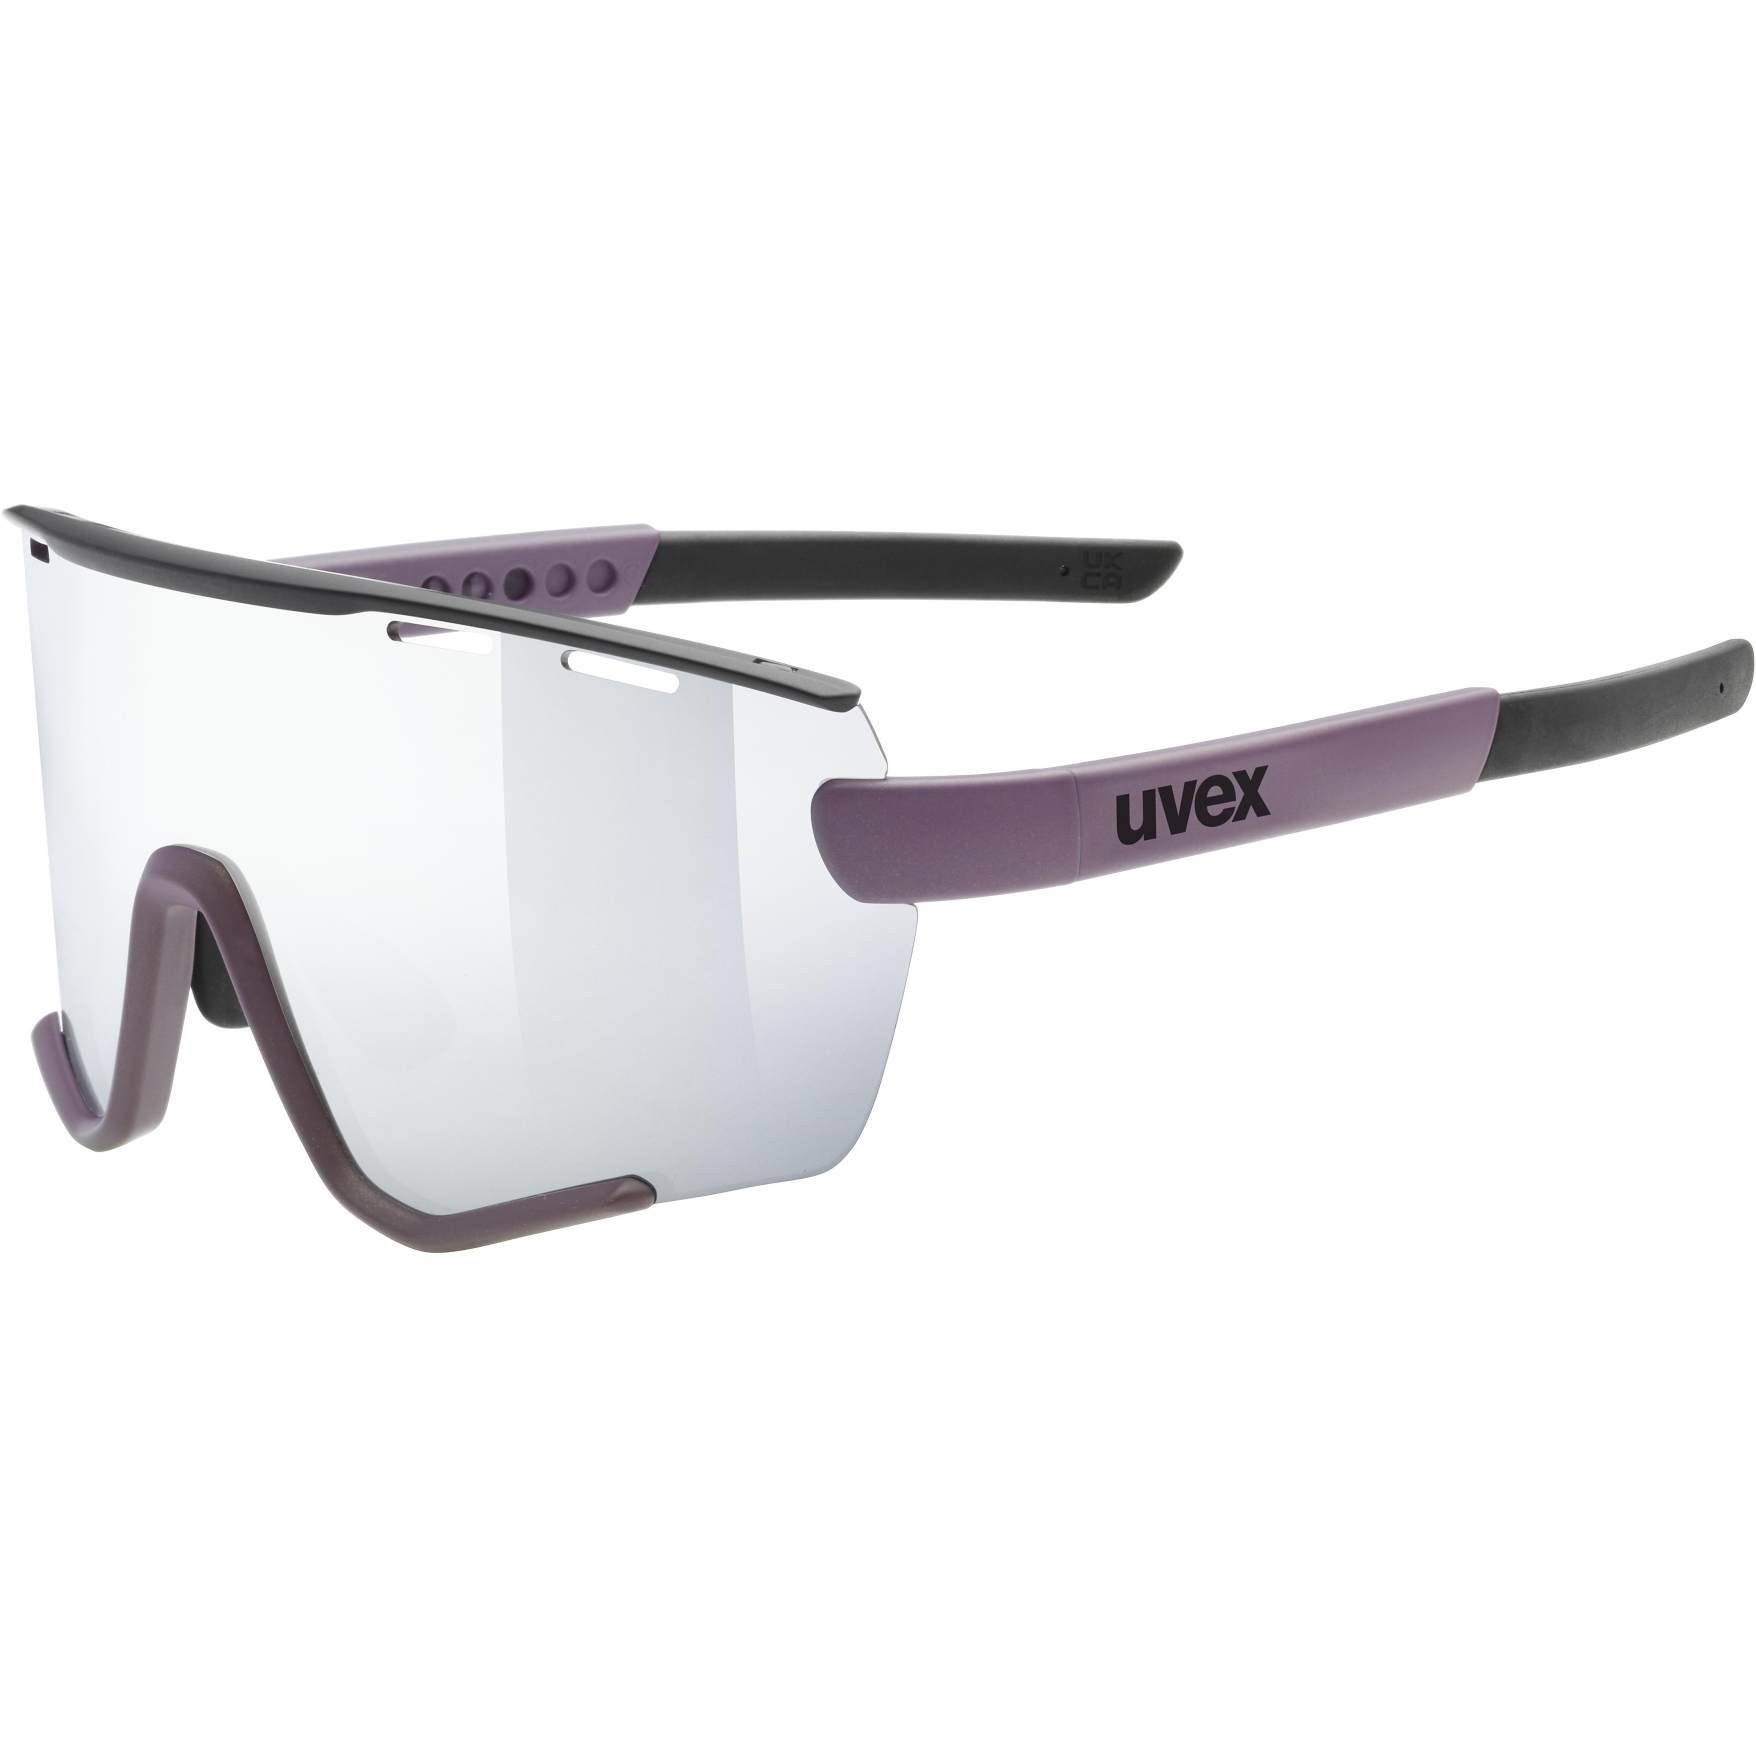 Produktbild von Uvex sportstyle 236 small Set Brille - plum black matt/mirror silver + clear